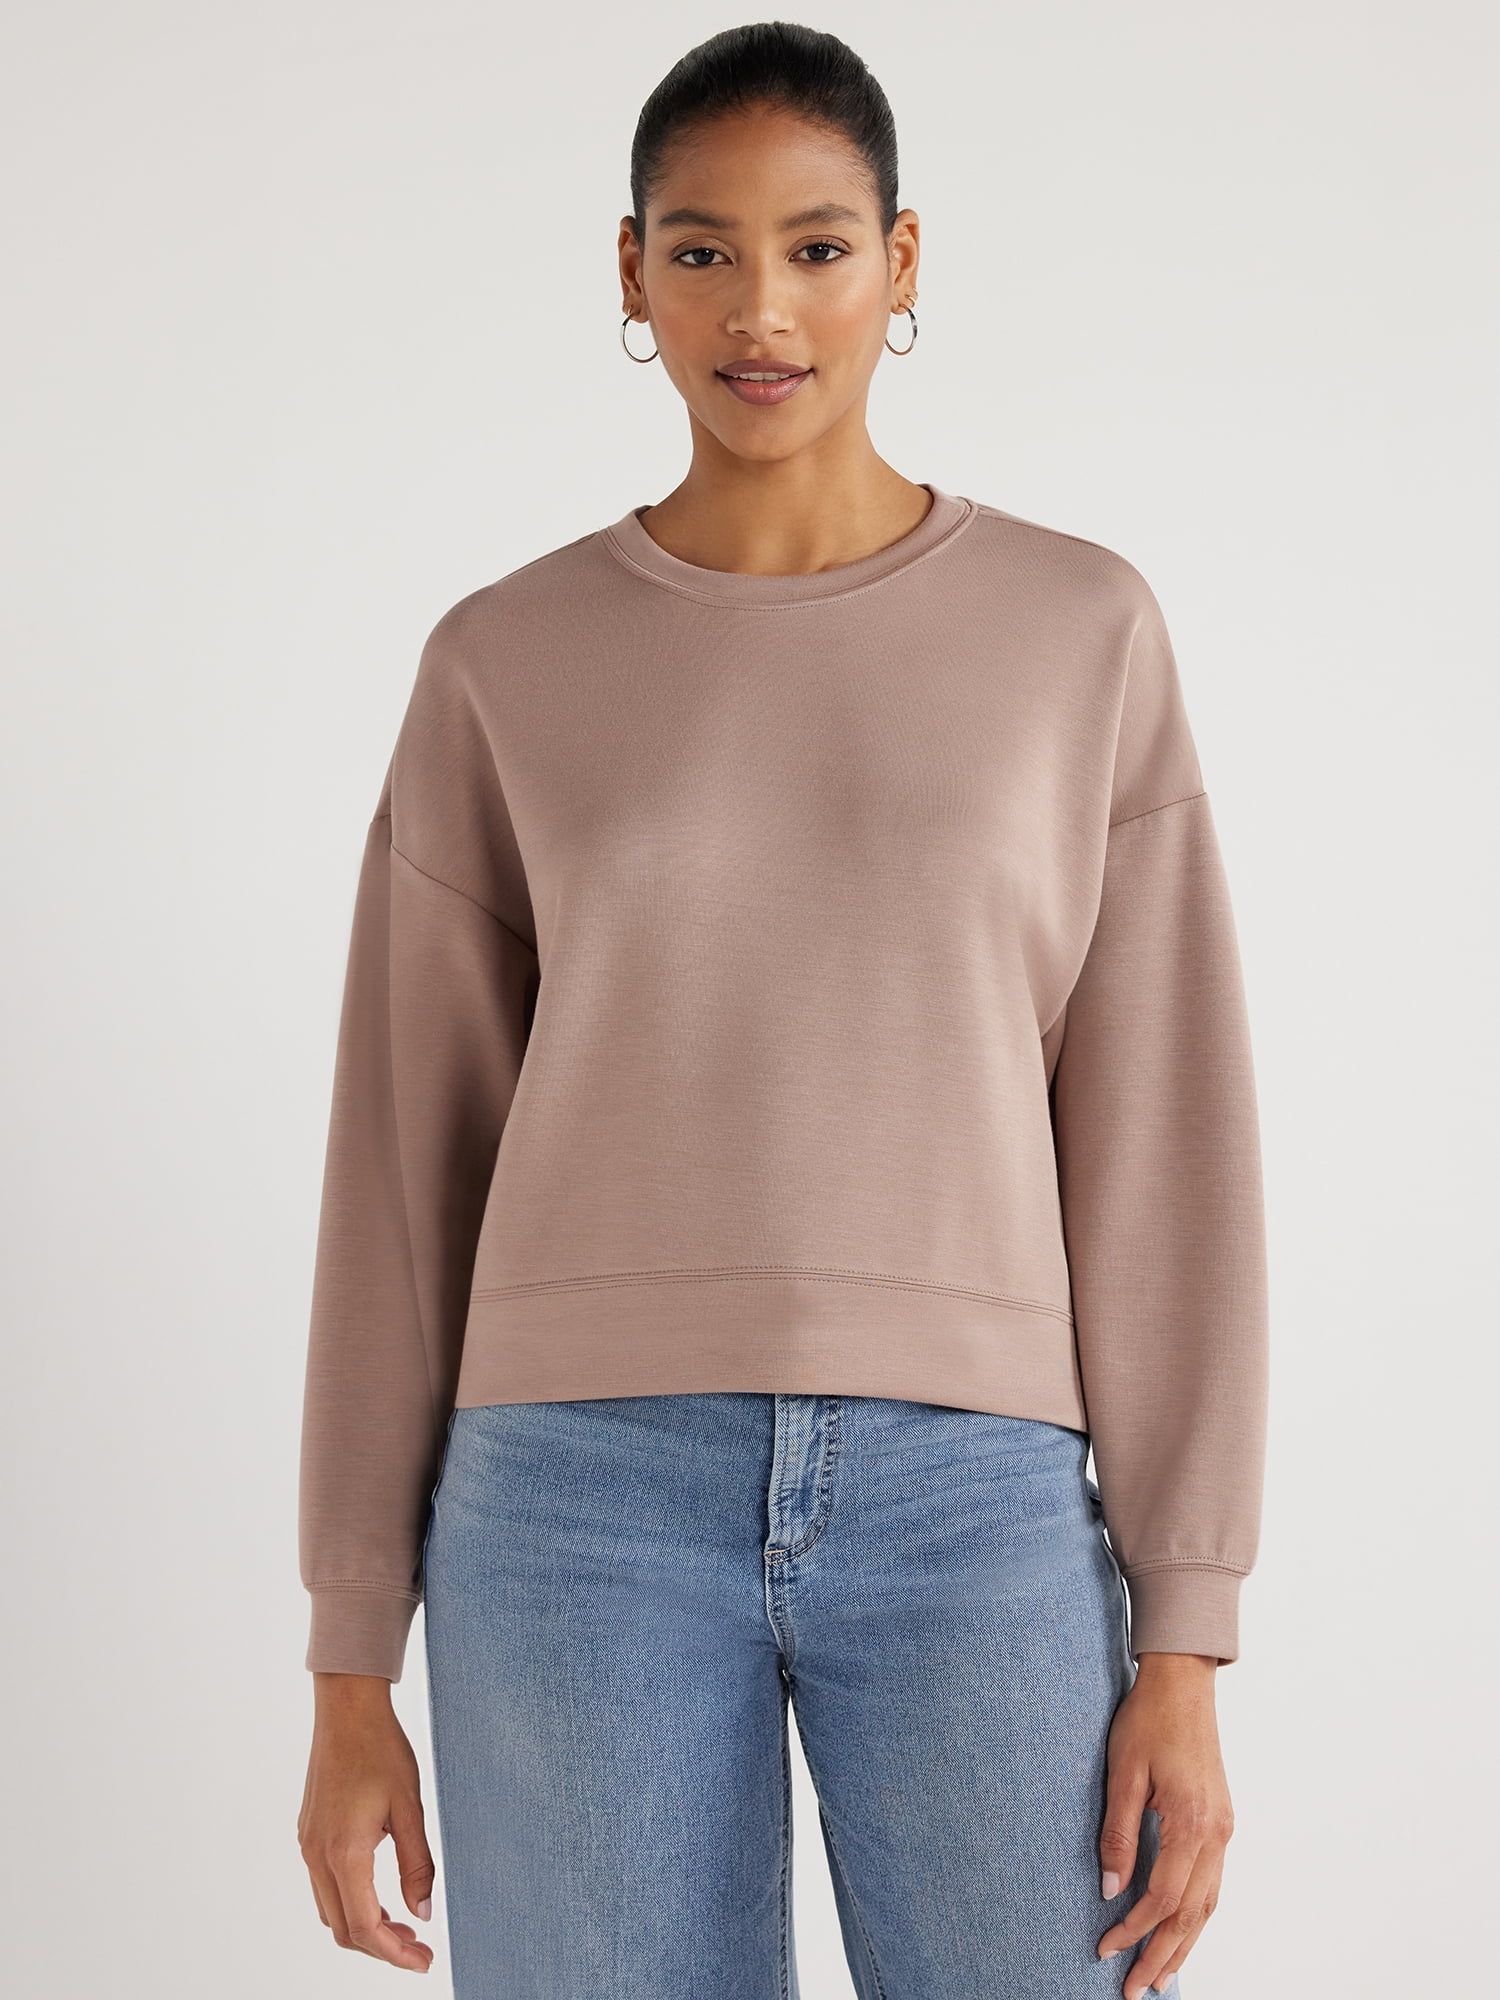 Scoop Women's Ultimate ScubaKnit Cropped Sweatshirt with Drop Sleeves, Size XS-XXL | Walmart (US)